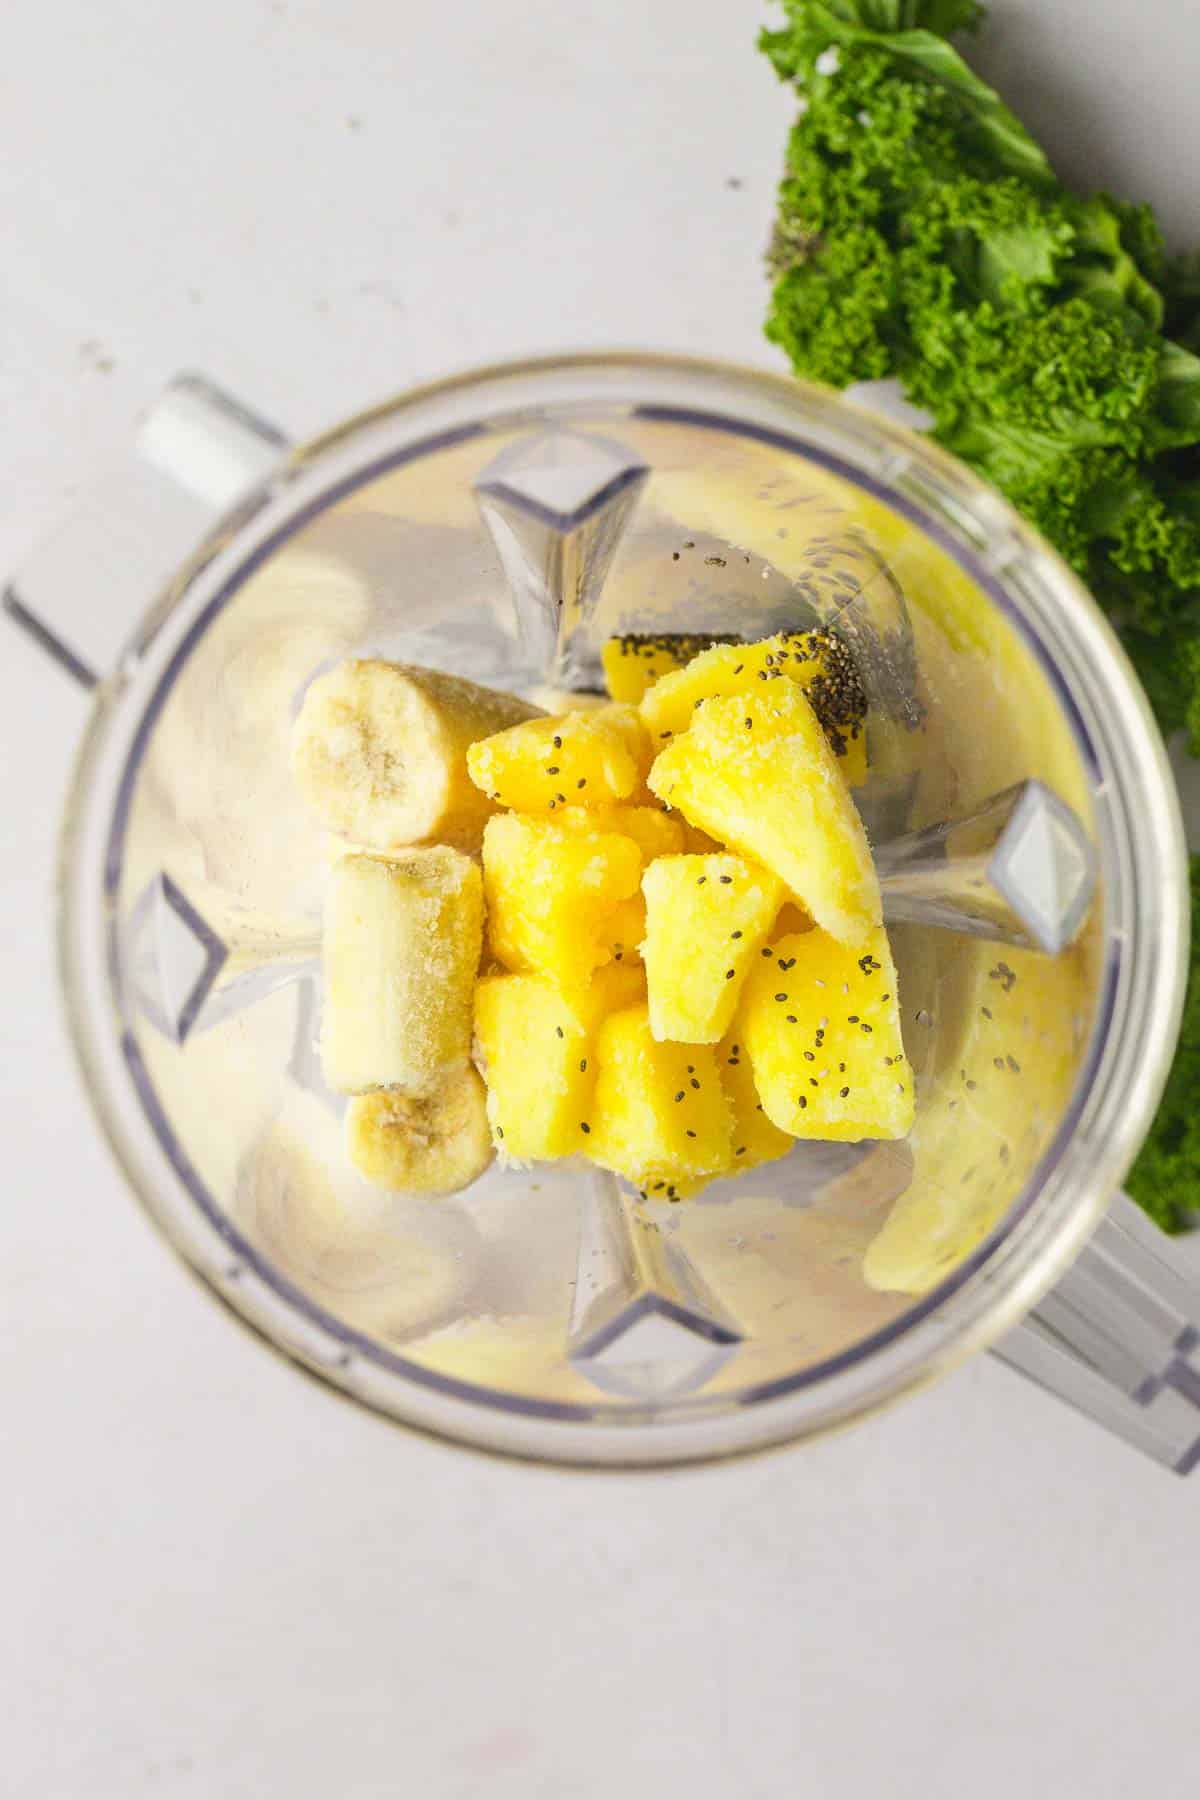 Kale Pineapple Smoothie ingredients in a blender before blending